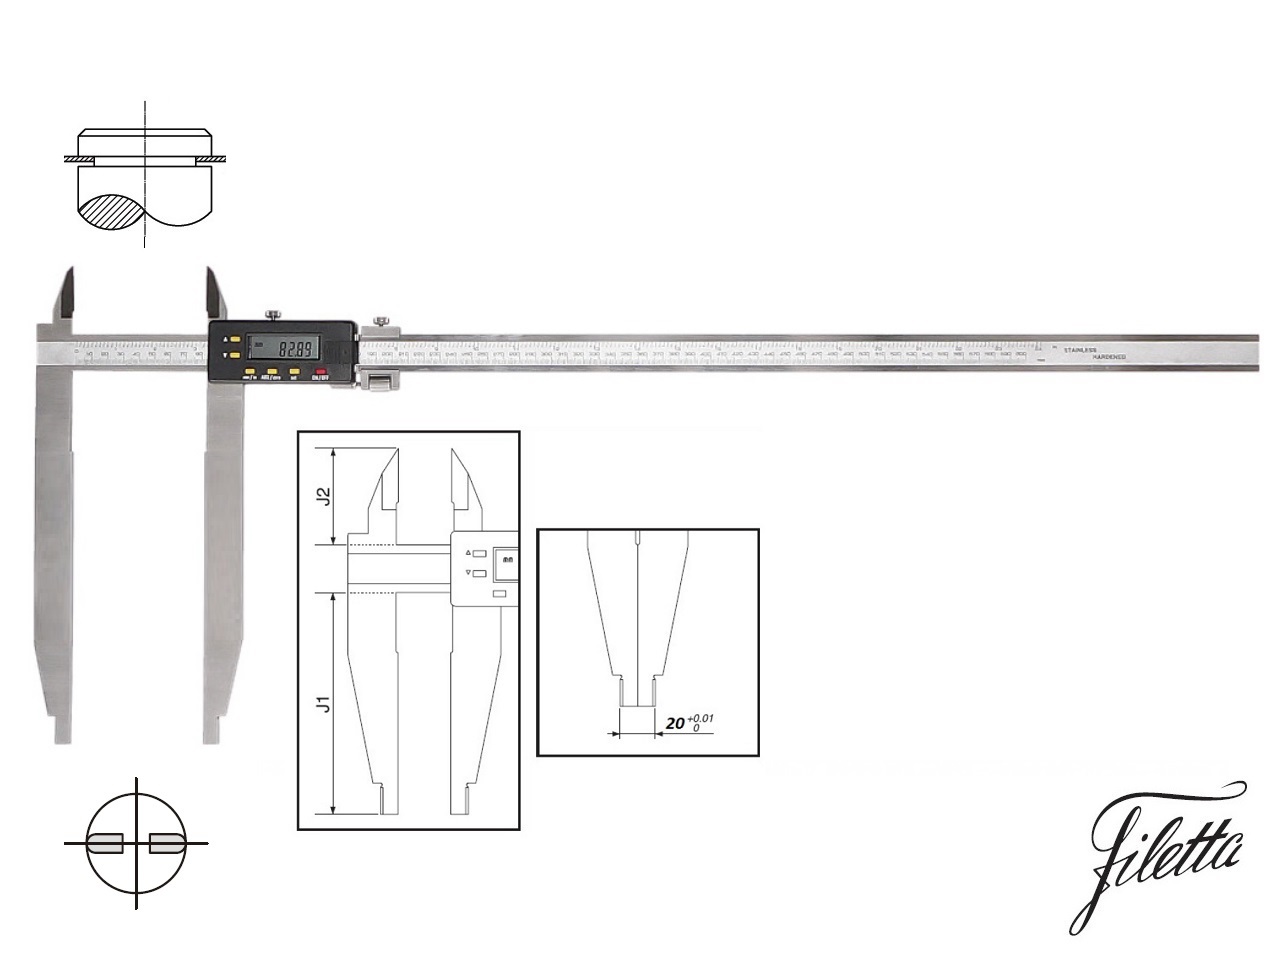 Digitální posuvné měřítko Filetta 0-500/250 mm s měřicími nožíky pro vnější měření